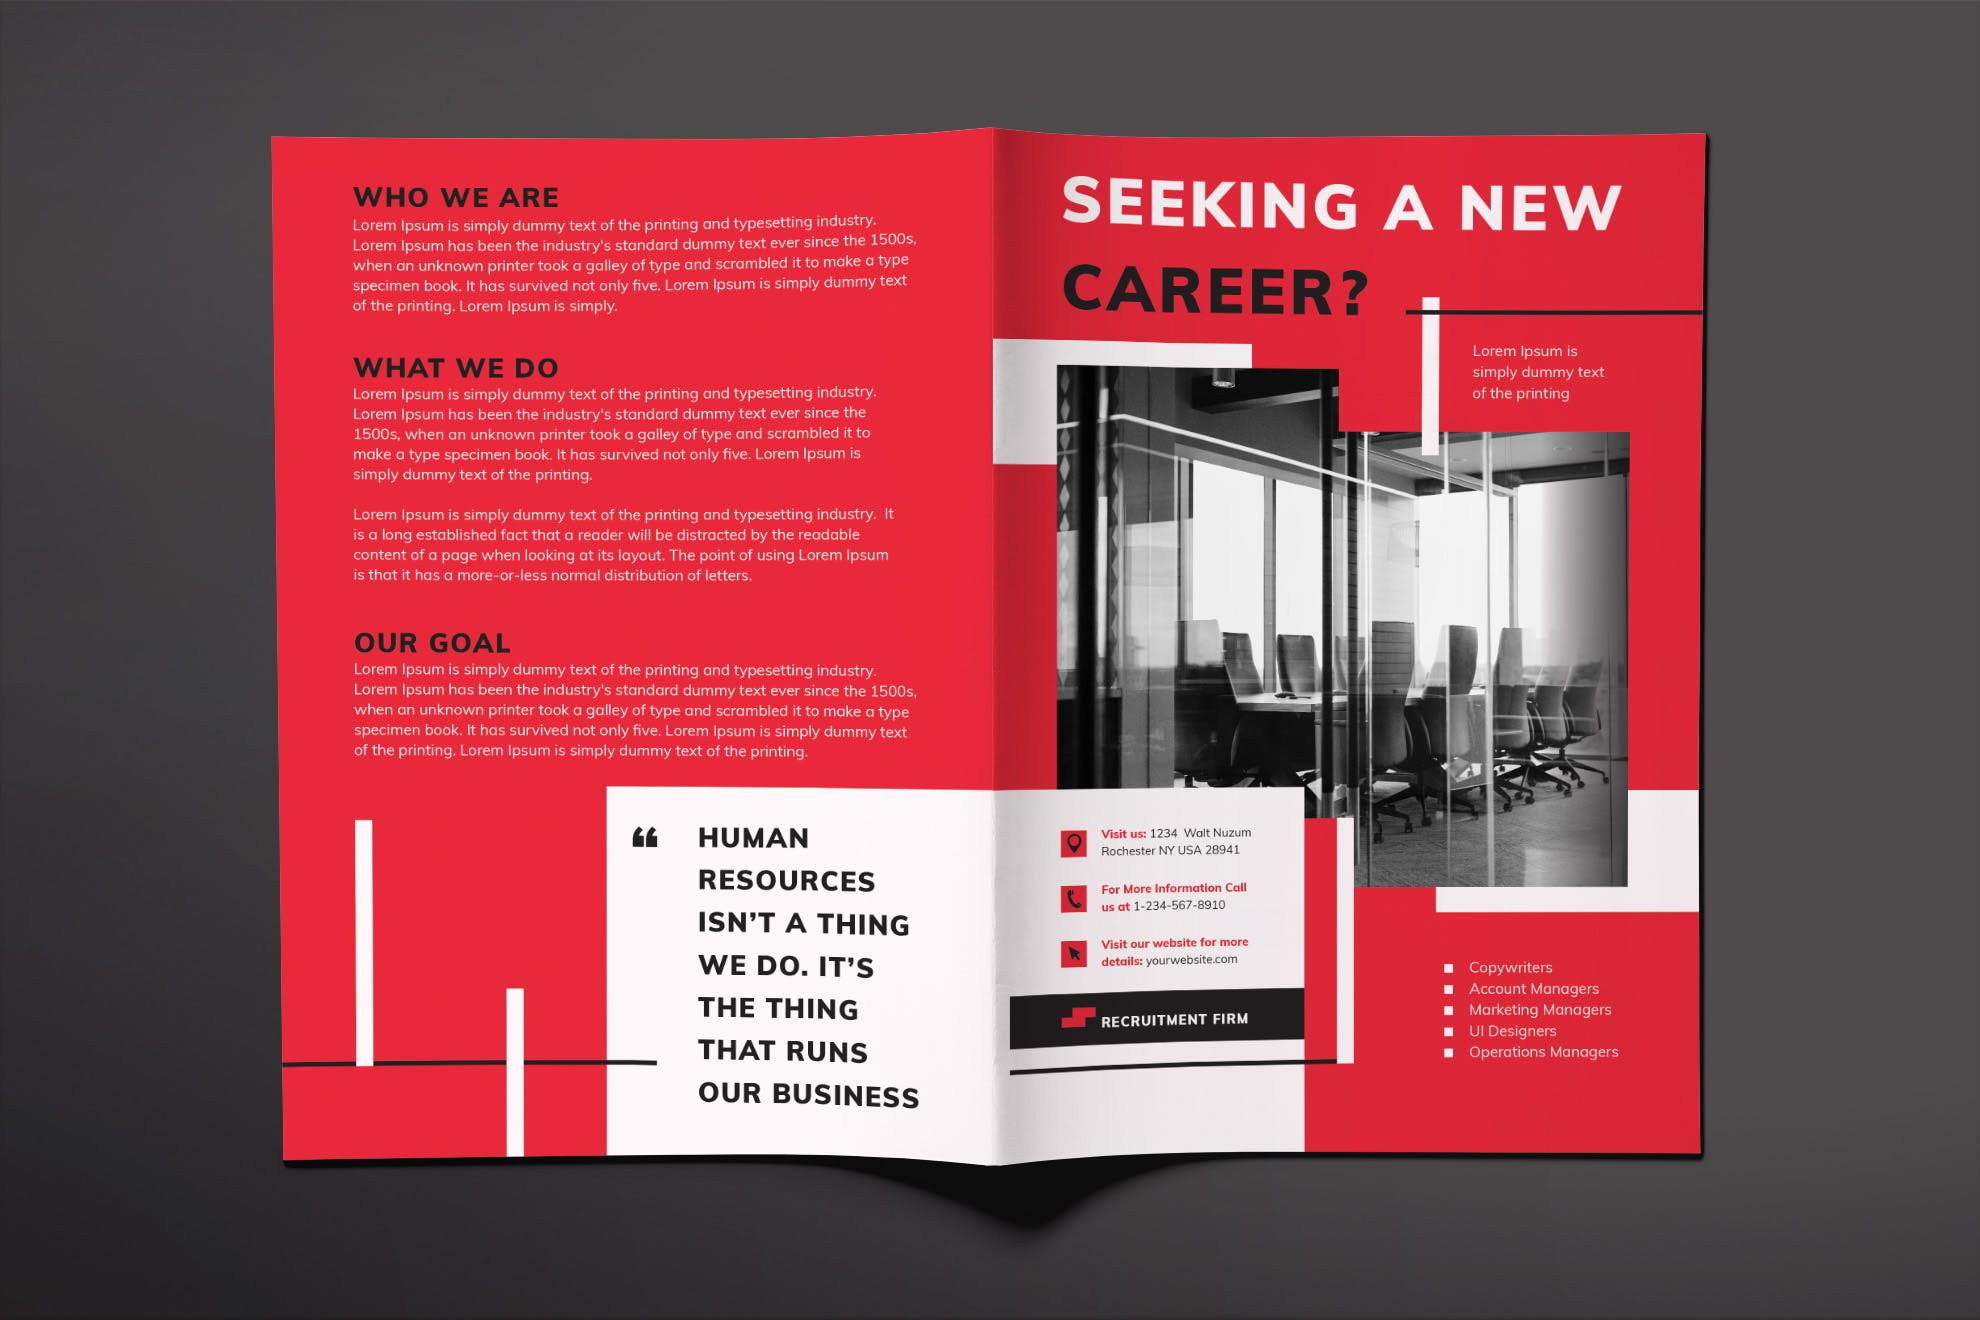 人力资源公司对折页宣传单设计模板 Recruitment Firm Brochure Bifold插图(1)